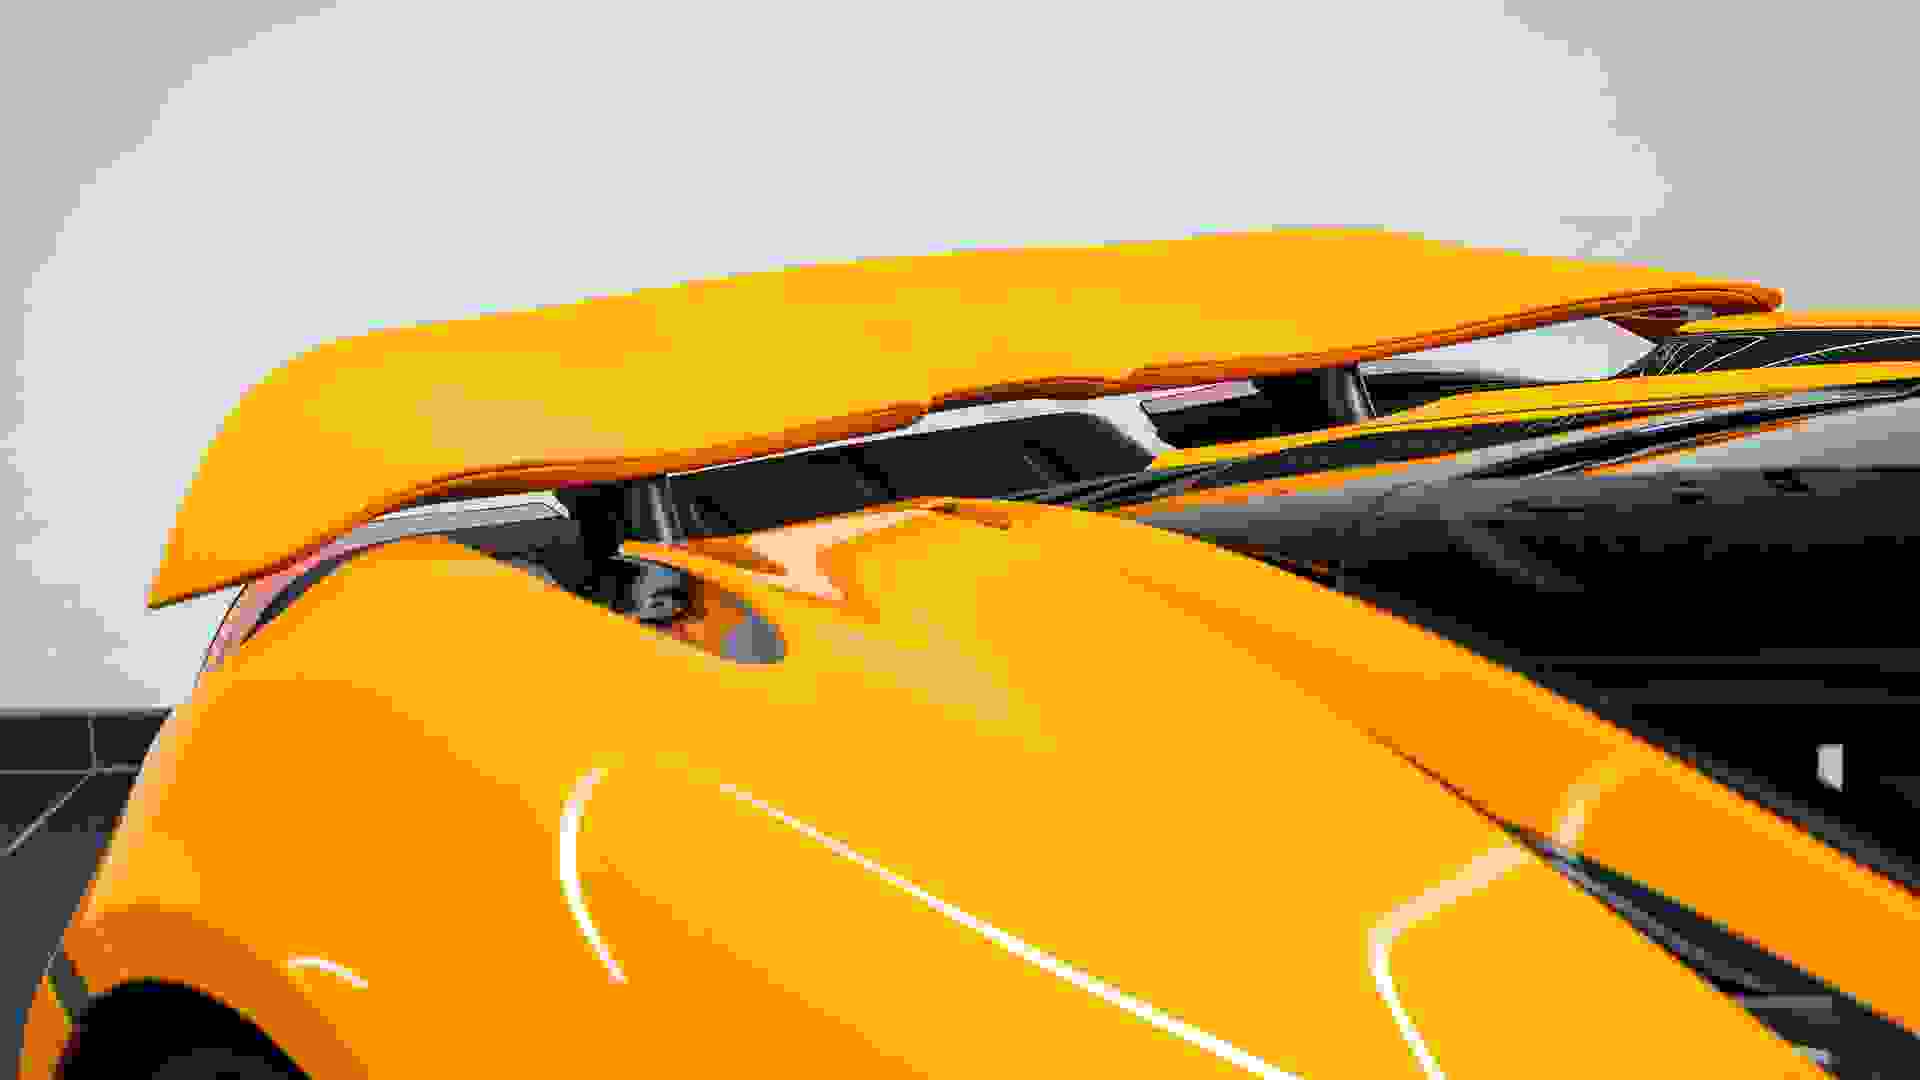 McLaren 720S Photo d6dad97e-bfd1-4457-a16b-33f353864cbf.jpg